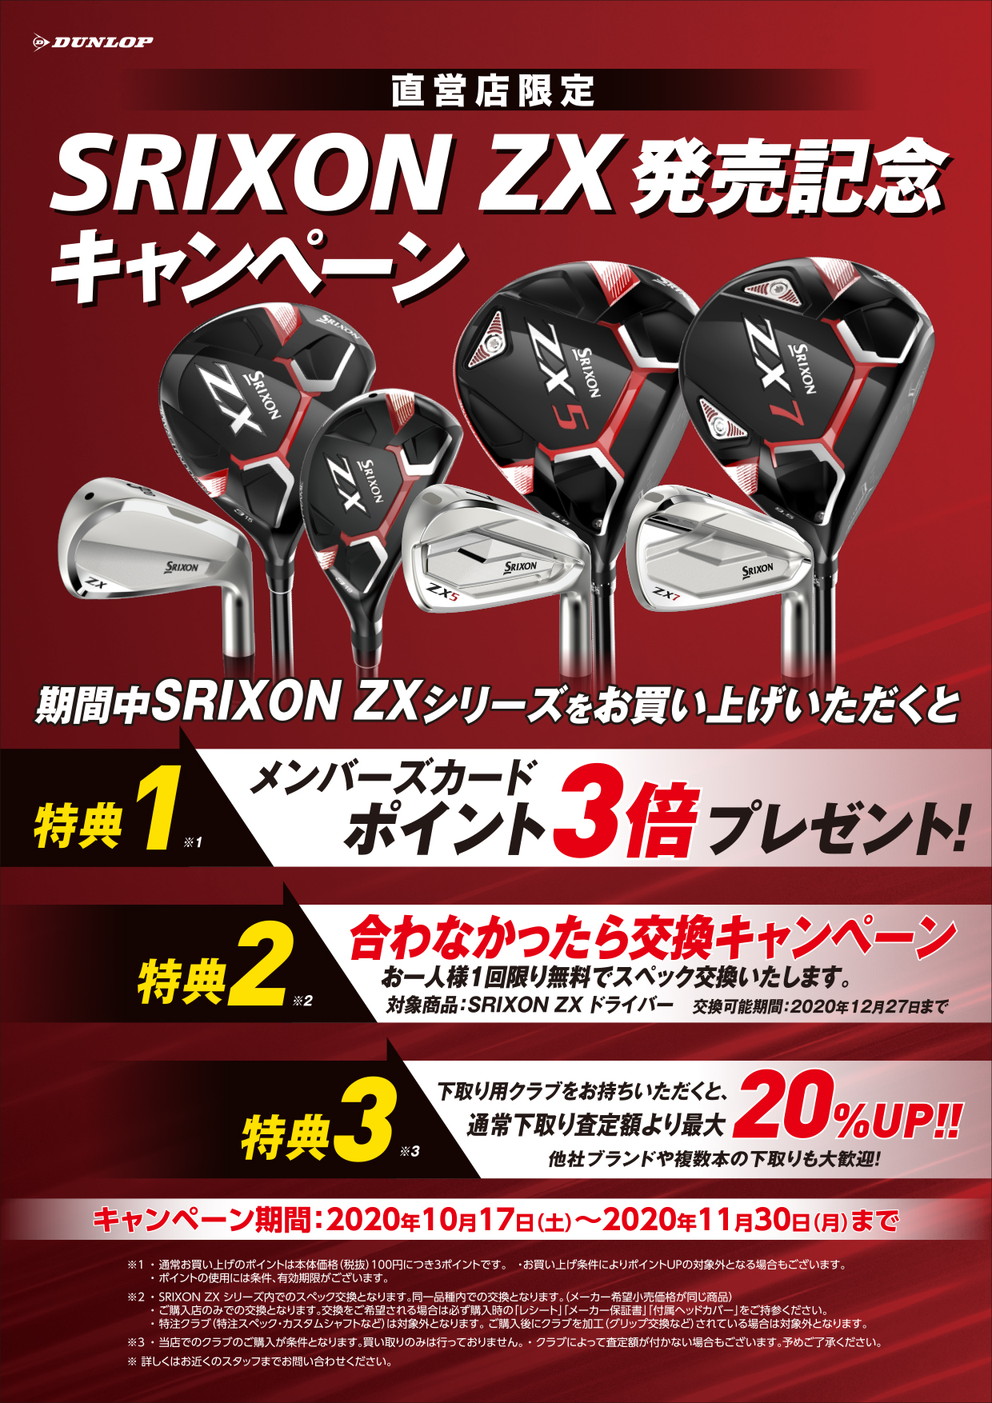 ダンロップクラブハウス全店舗「SRIXON ZX 発売記念キャンペーン 